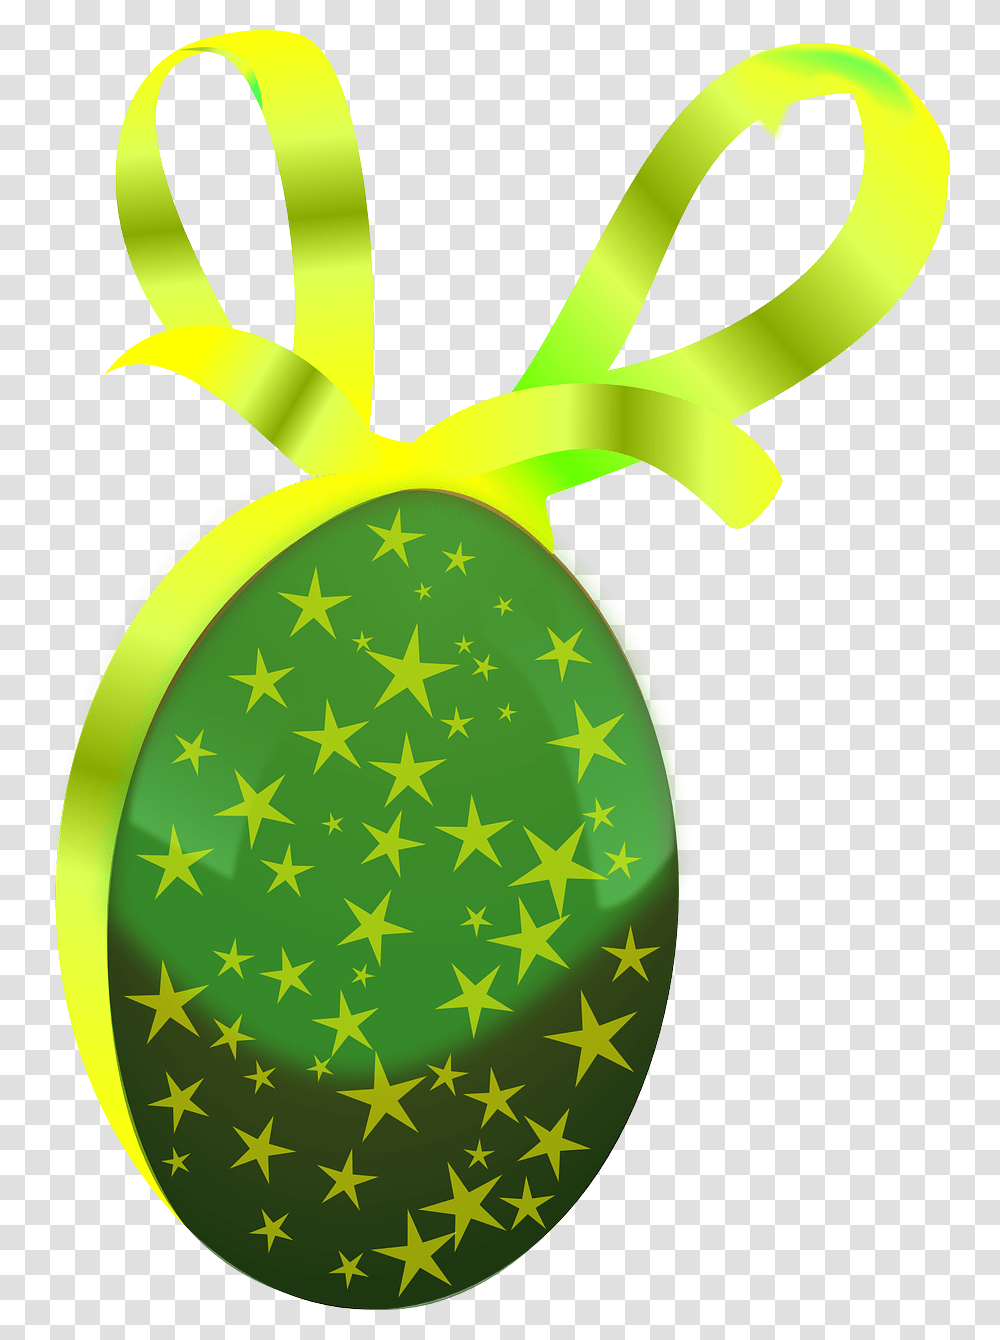 Egggifteastereaster Egggreenribbonfree Vector Ovo De Pascoa Verde, Plant, Fruit, Food, Pineapple Transparent Png